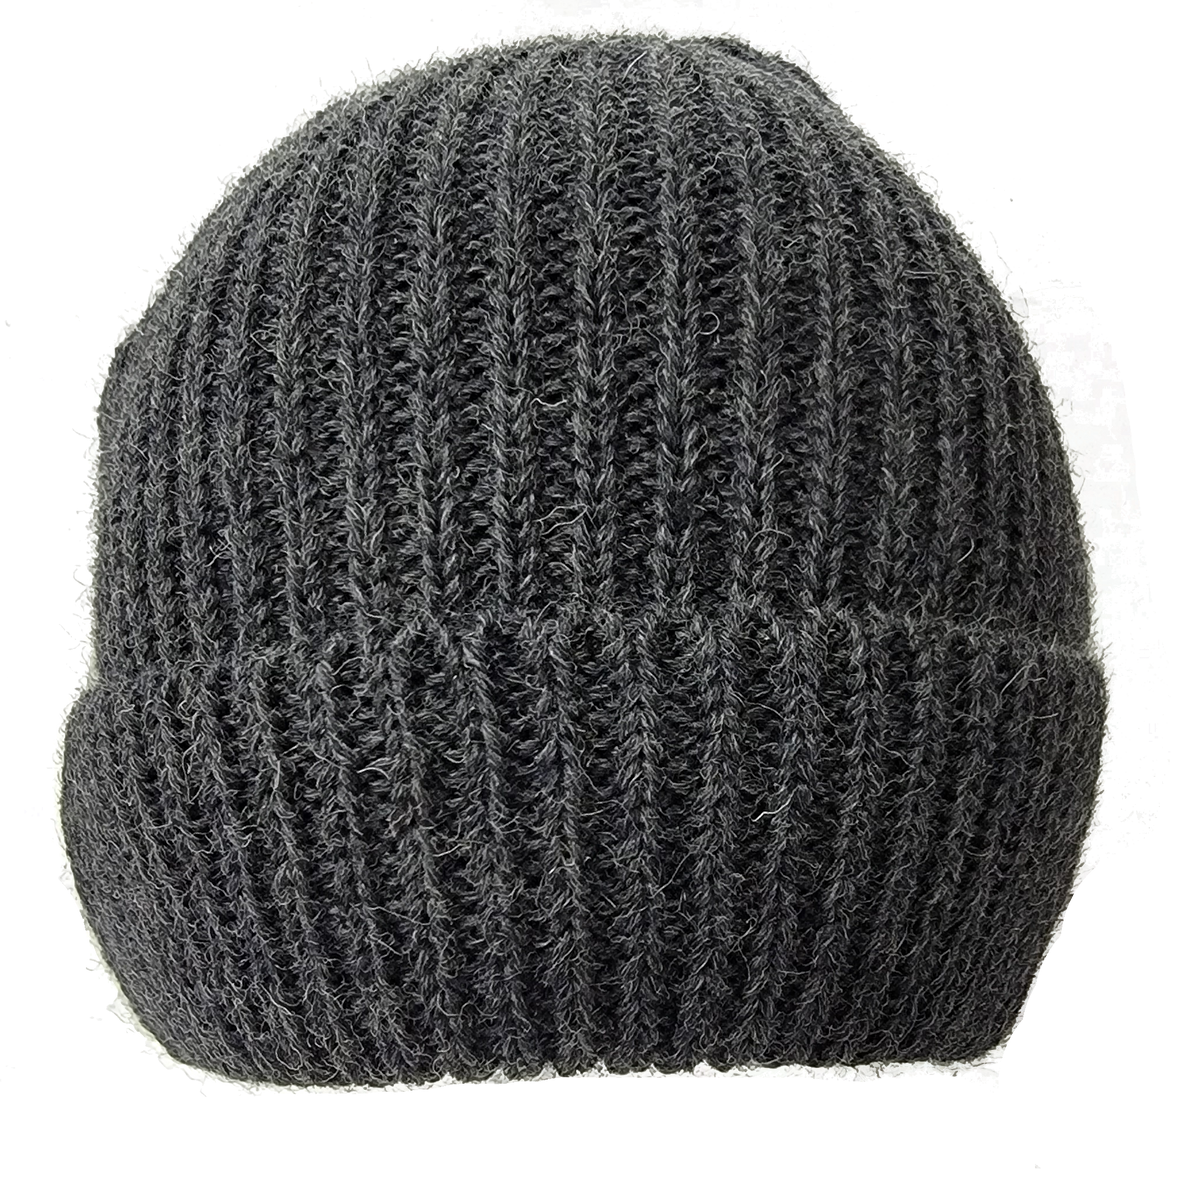 Woolly Pully Beanie Hats - TW Kempton Lamlash Knit Wool Watch Cap